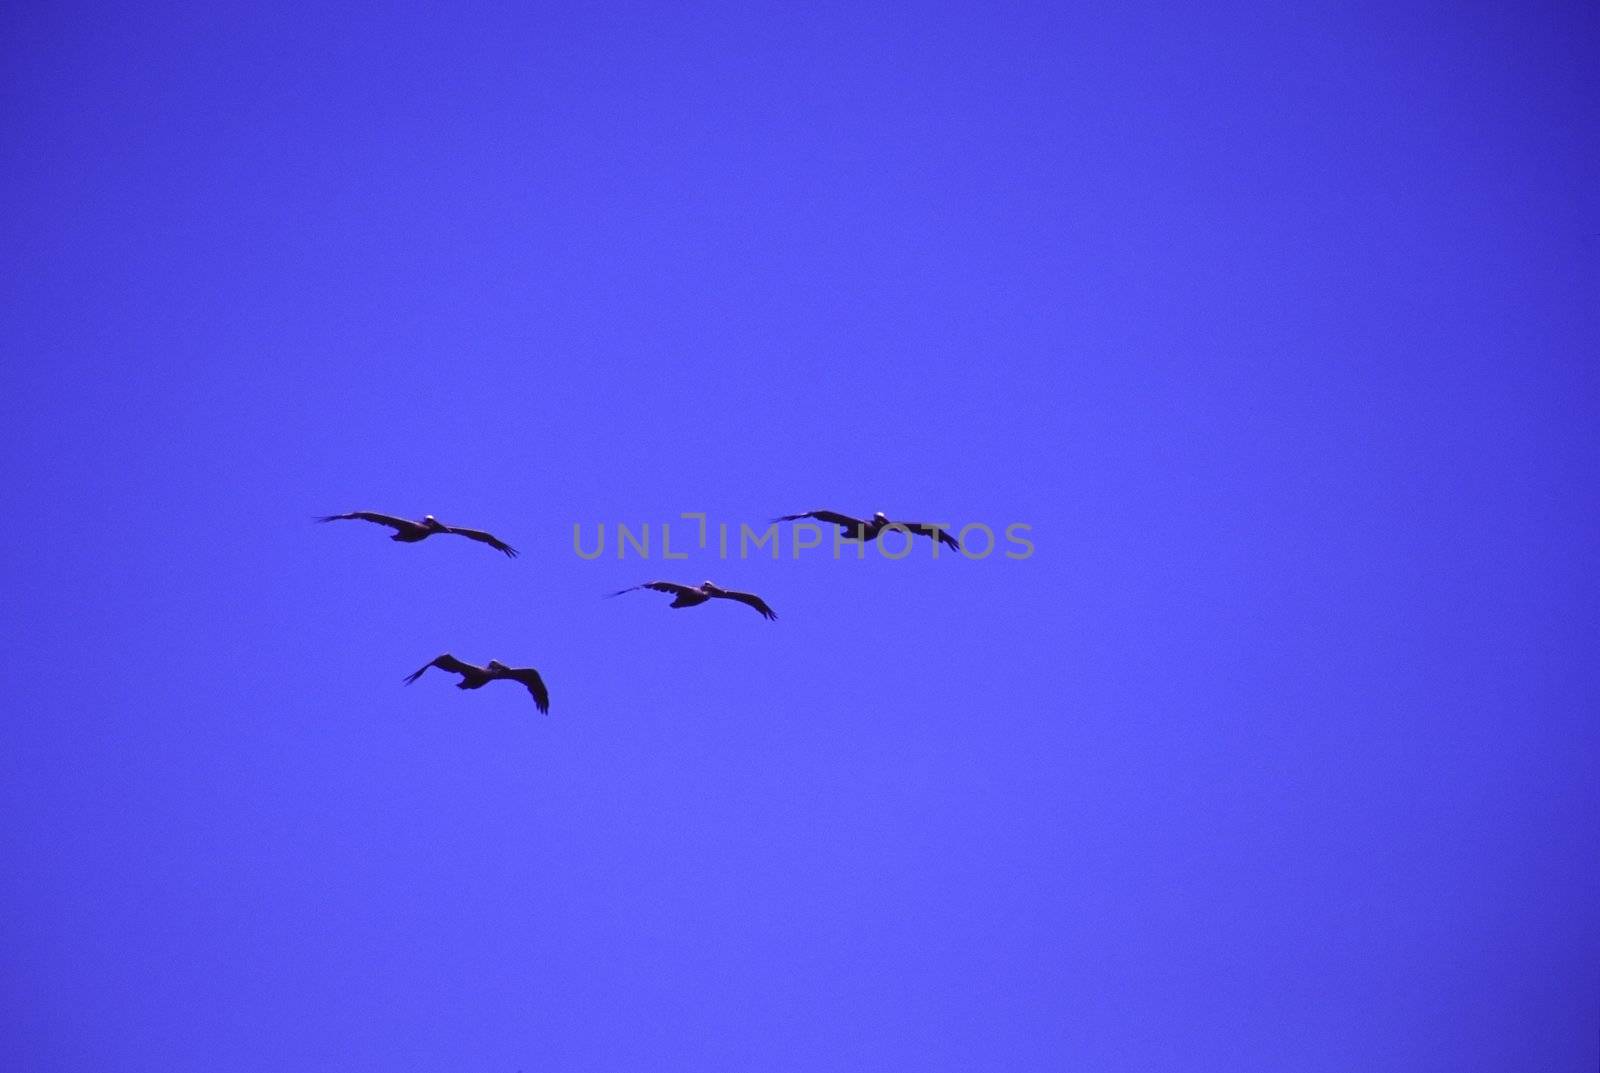 Pelicans by melastmohican